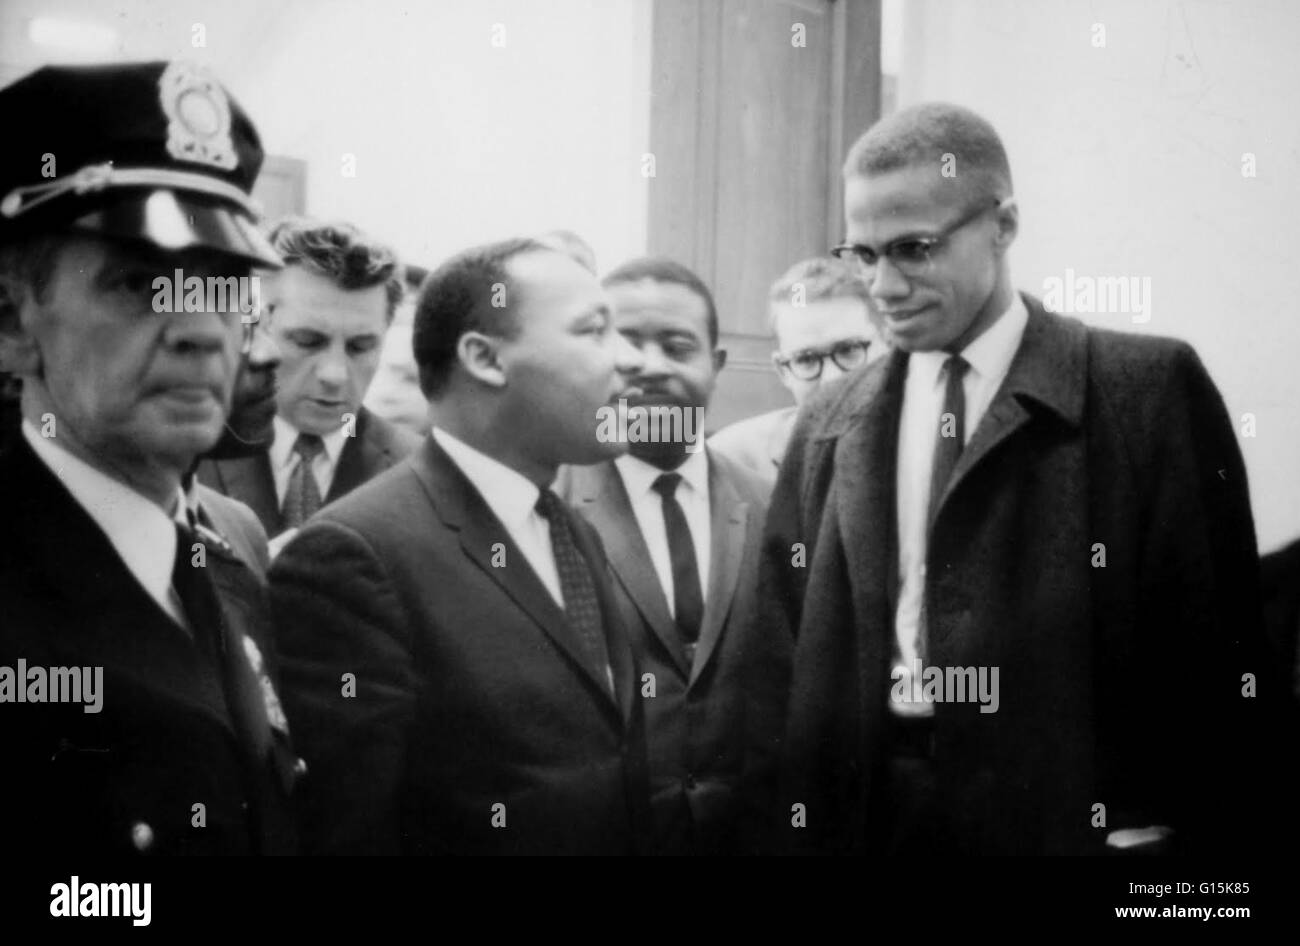 Martin Luther King Jr. (1929-1968) era un pastore americano, attivista e leader di spicco nell'afro-americano di movimento per i diritti civili. Egli è meglio conosciuto per il suo ruolo nel progresso dei diritti civili negli Stati Uniti e in tutto il mondo, utilizzando Foto Stock